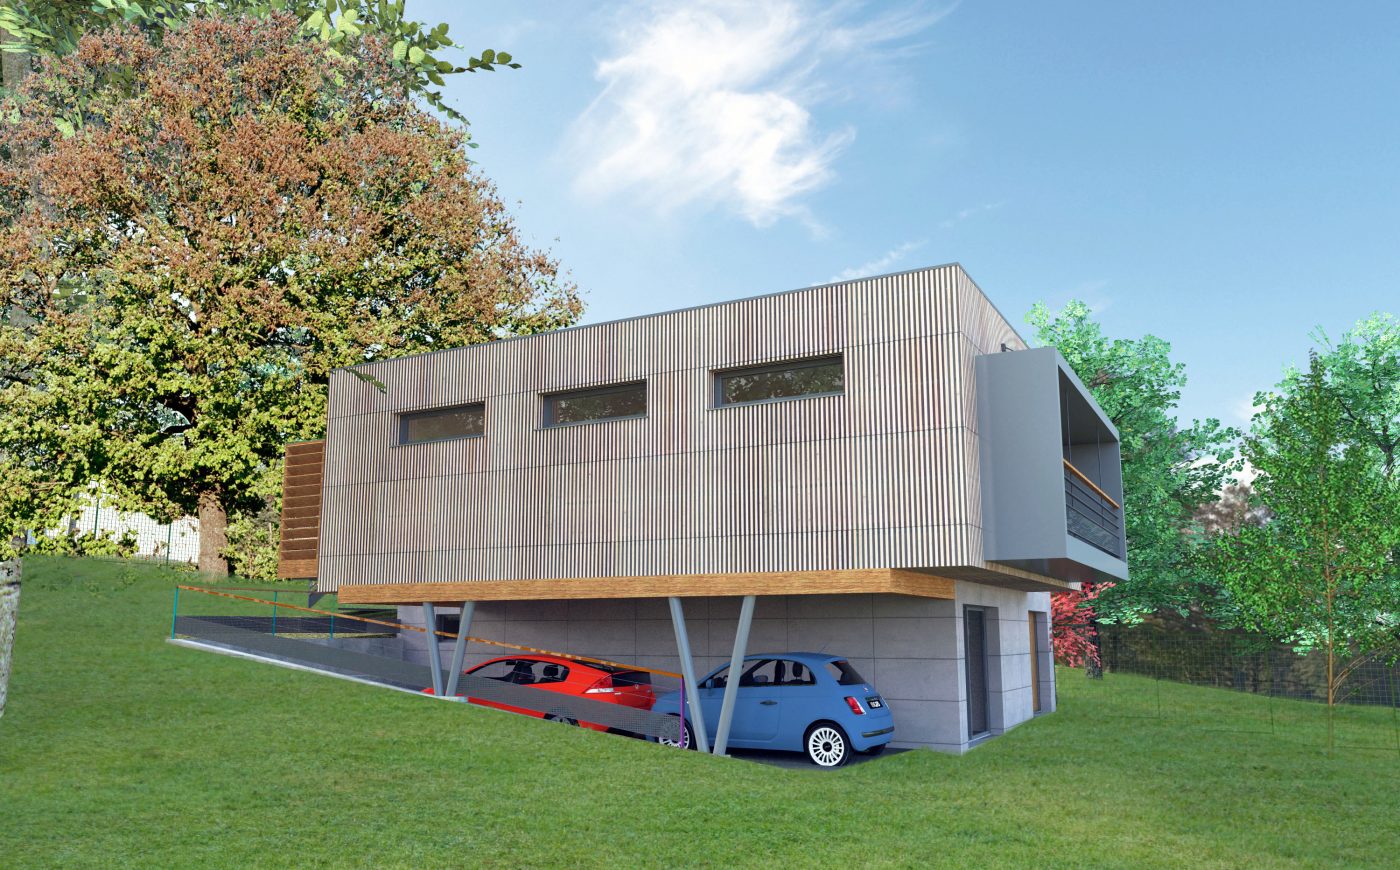 Philippe_Zerbib_Architecte_construction_maisons_ossature_bois_projet_maison_Amozigh_View 0_11